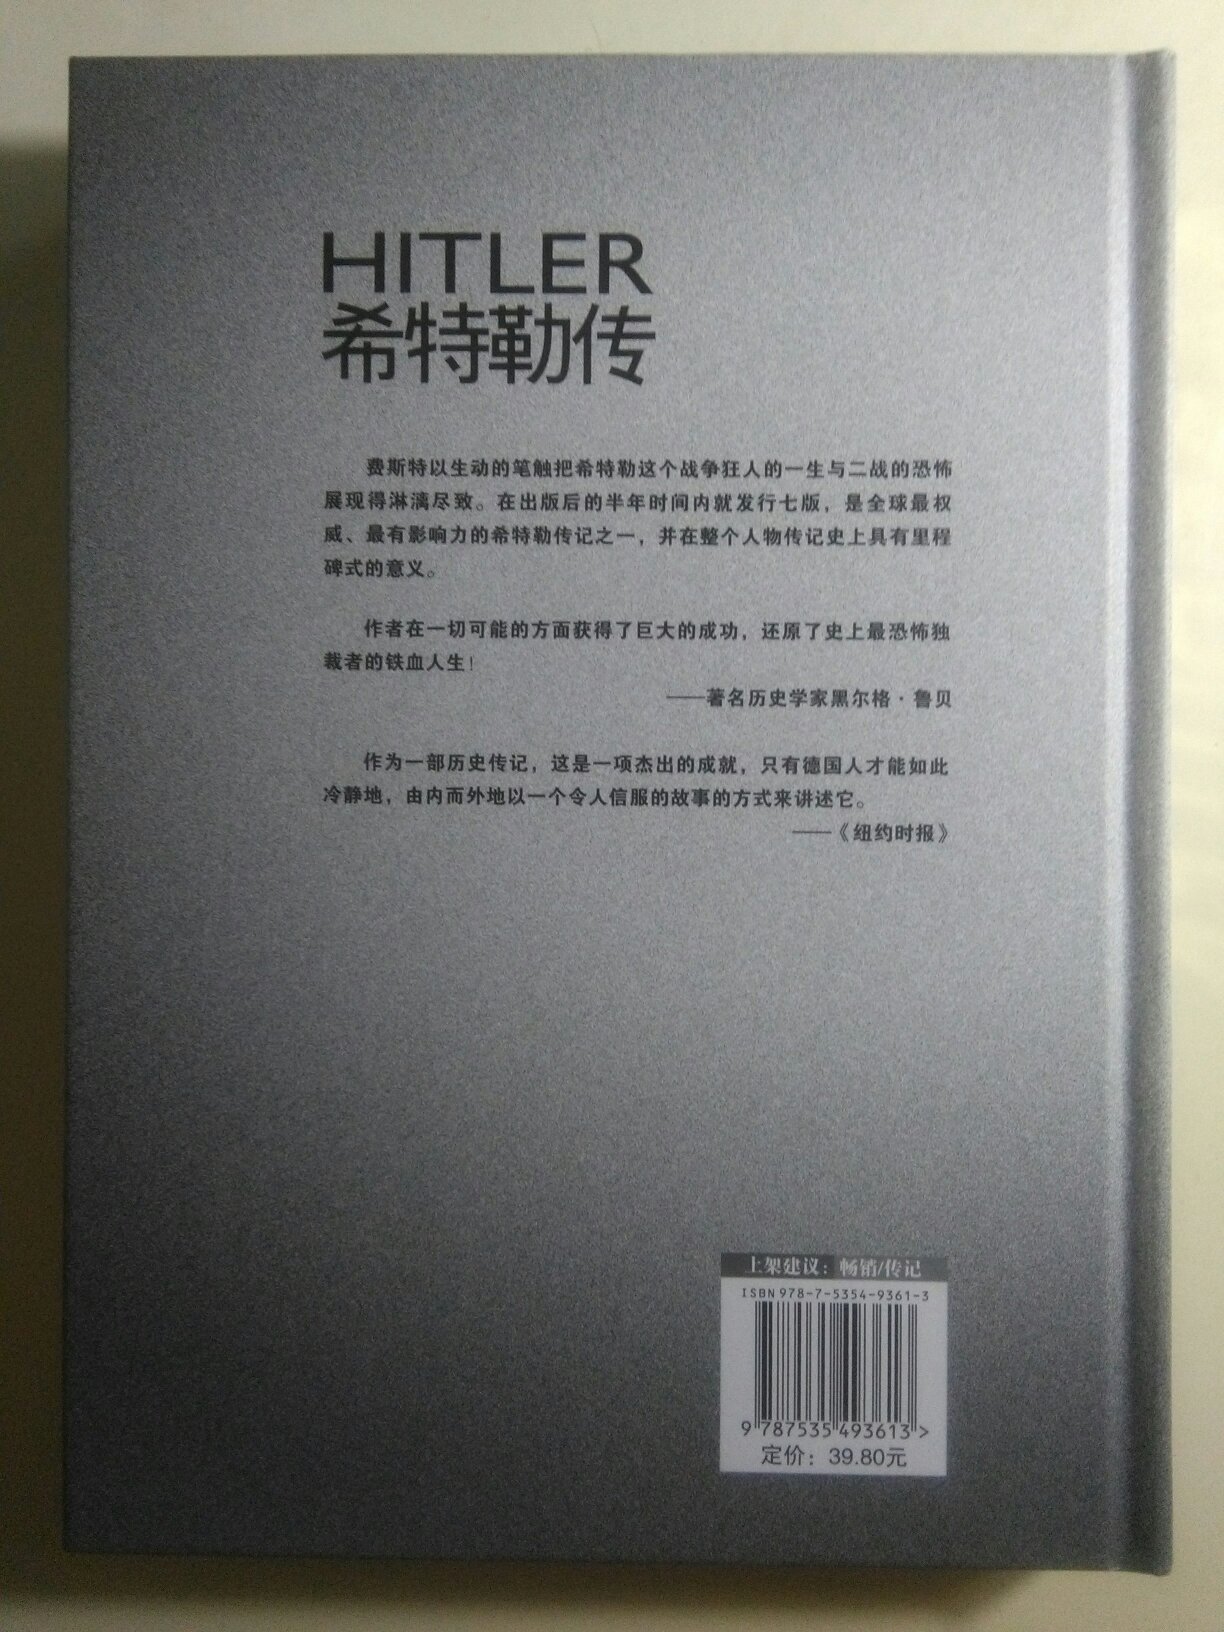 不同国家的作者对希特勒有着不同微妙的书写，此书作者是德国人，看看德国作者如何书写希特勒传记。